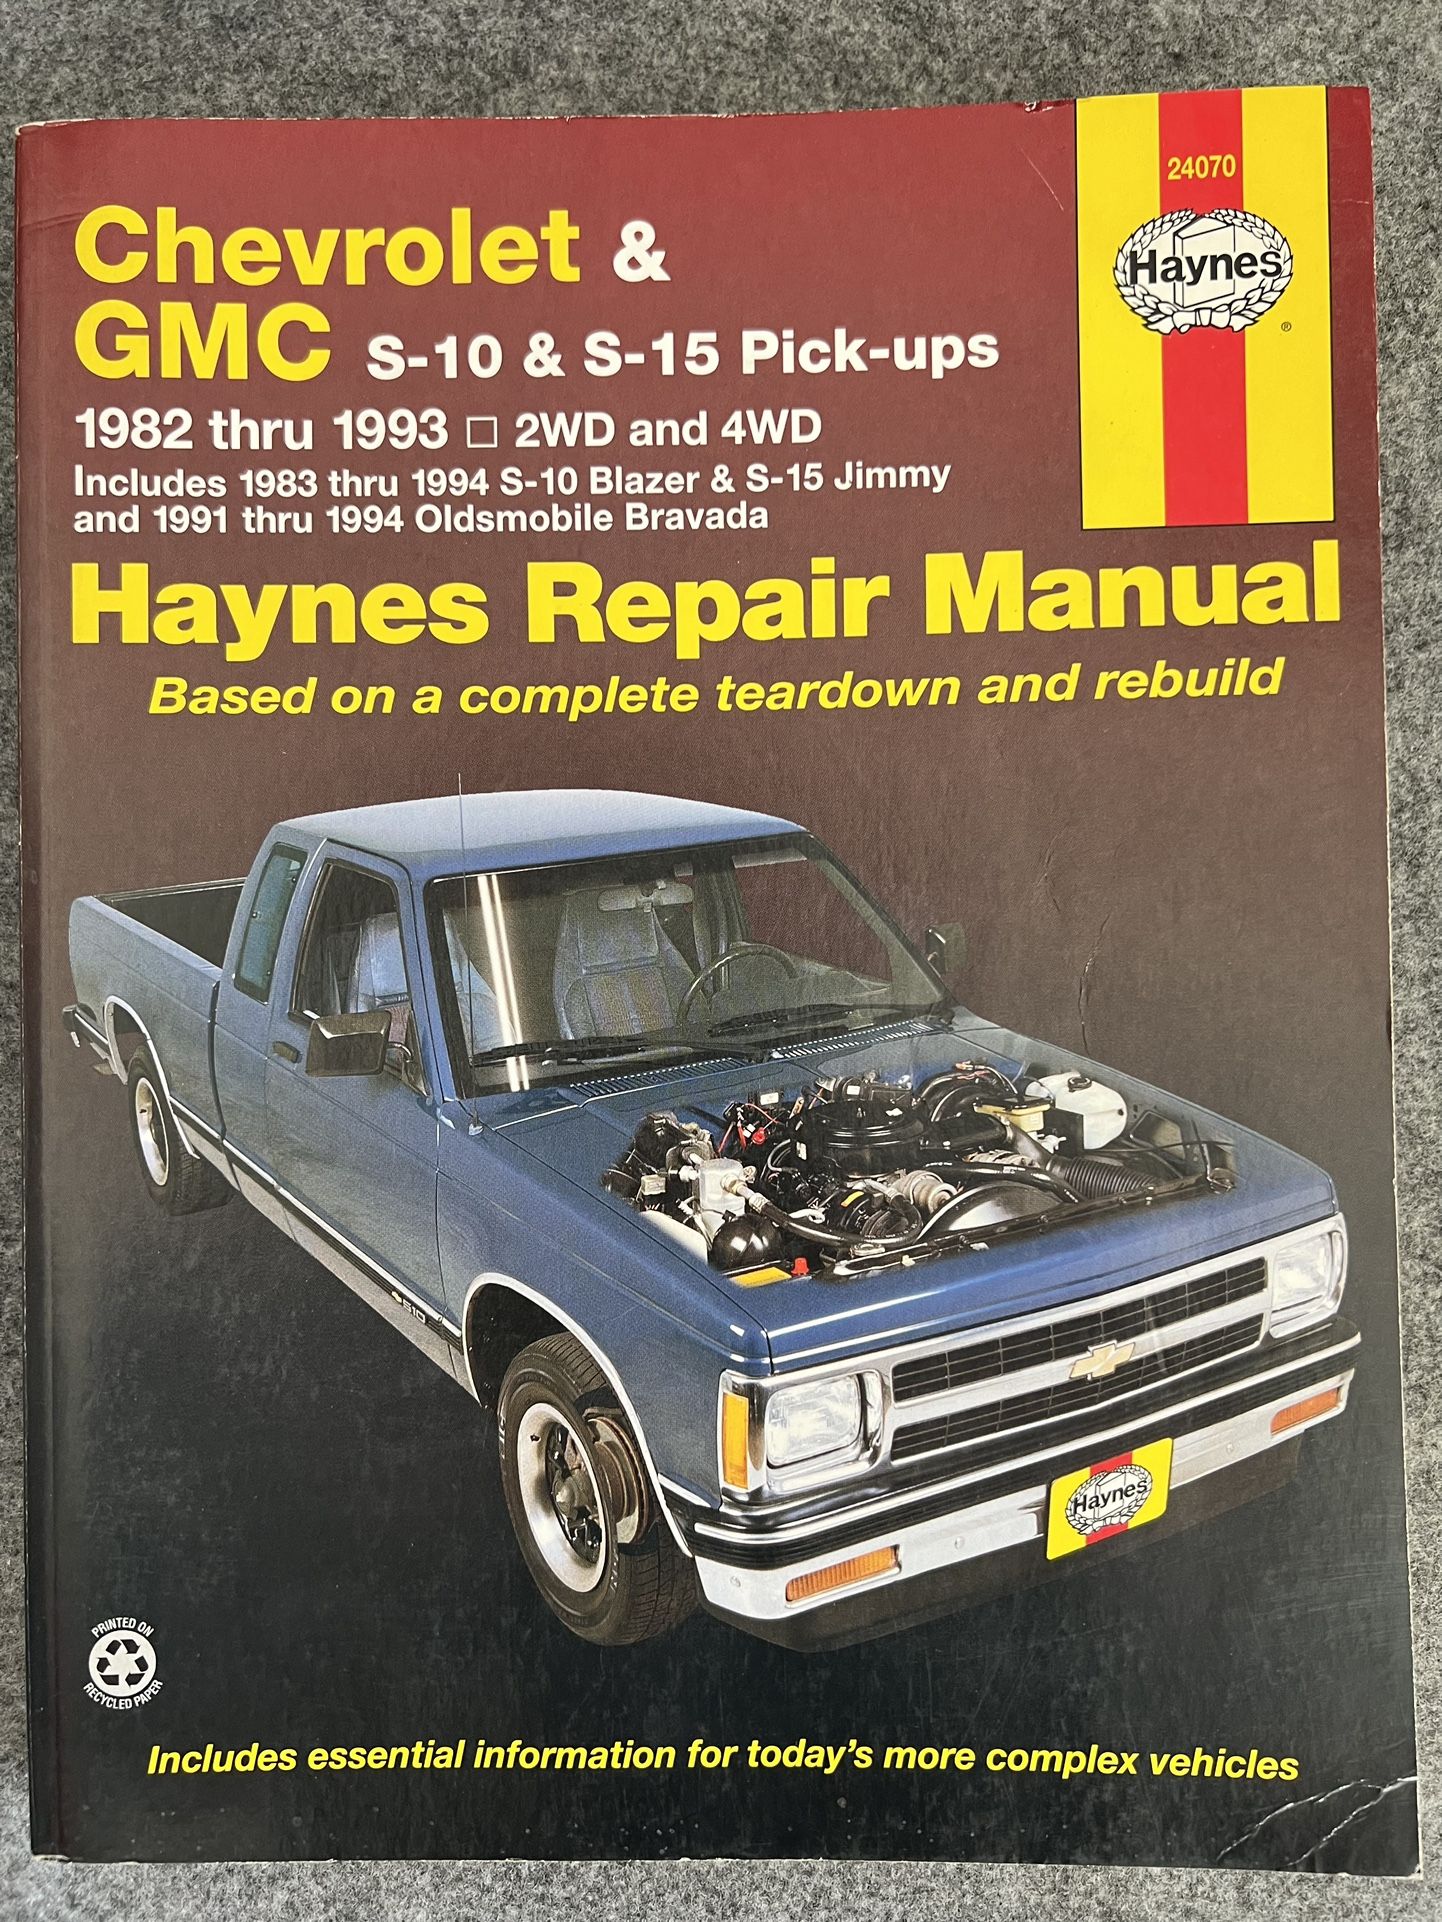 Haynes Chevrolet S10 & S15 Trucks Repair Manual